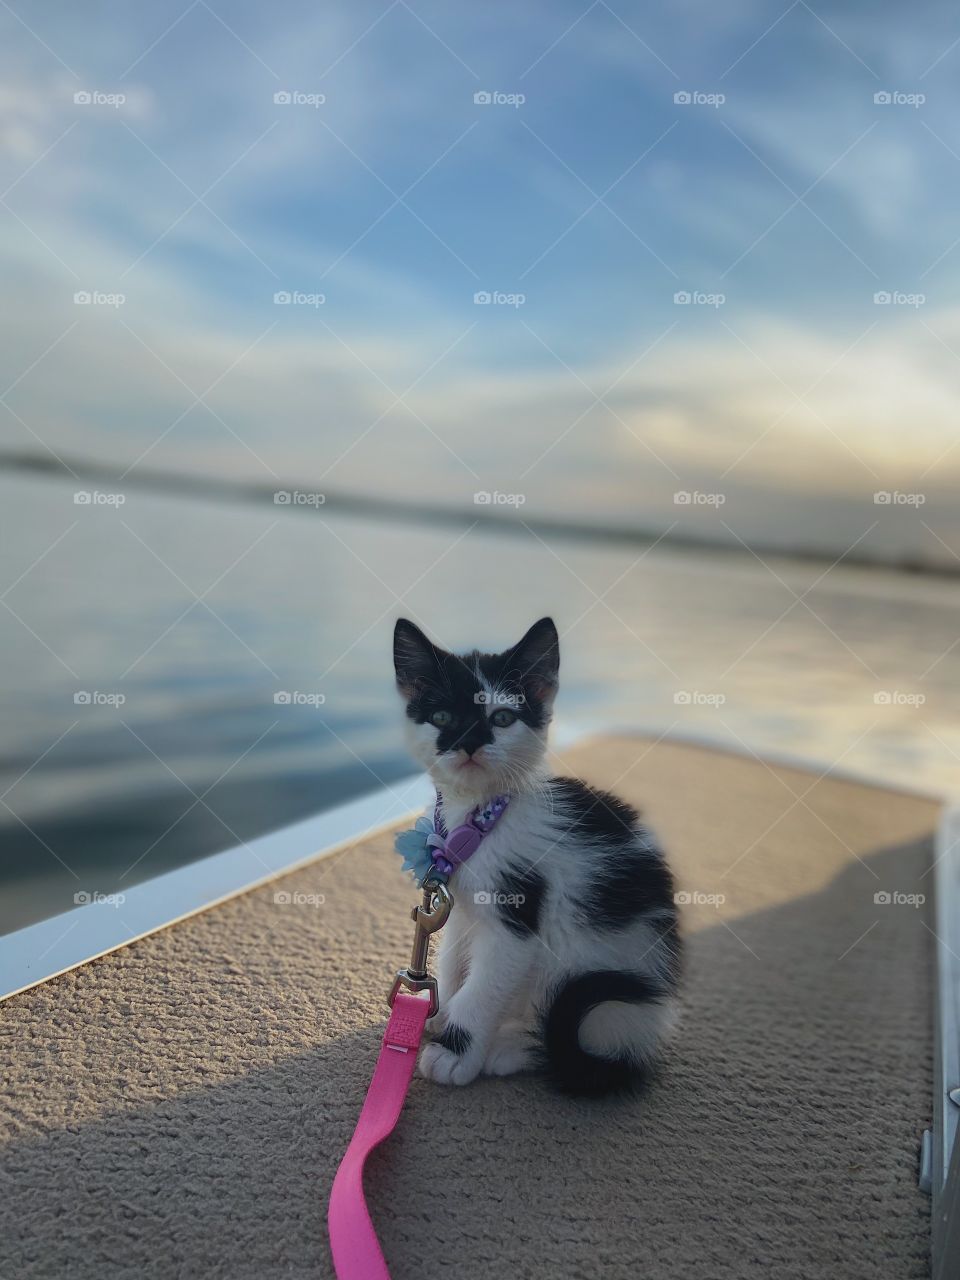 Lake kitty